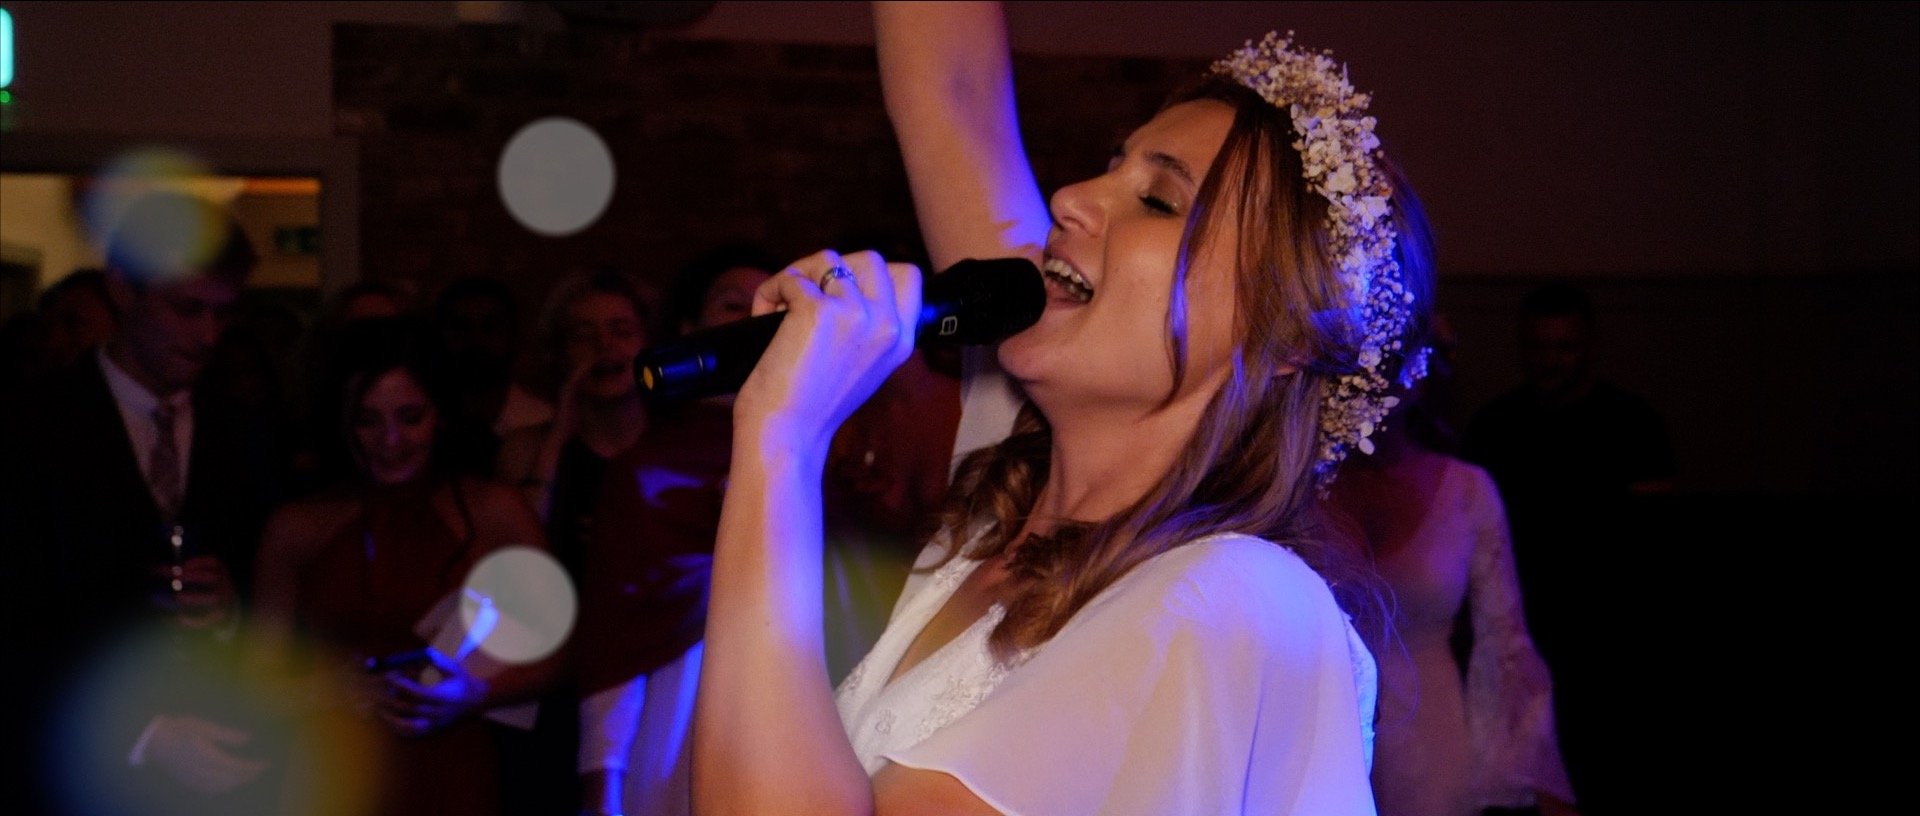 Singing bride at her wedding - videos by 3 Cheers Media.jpg